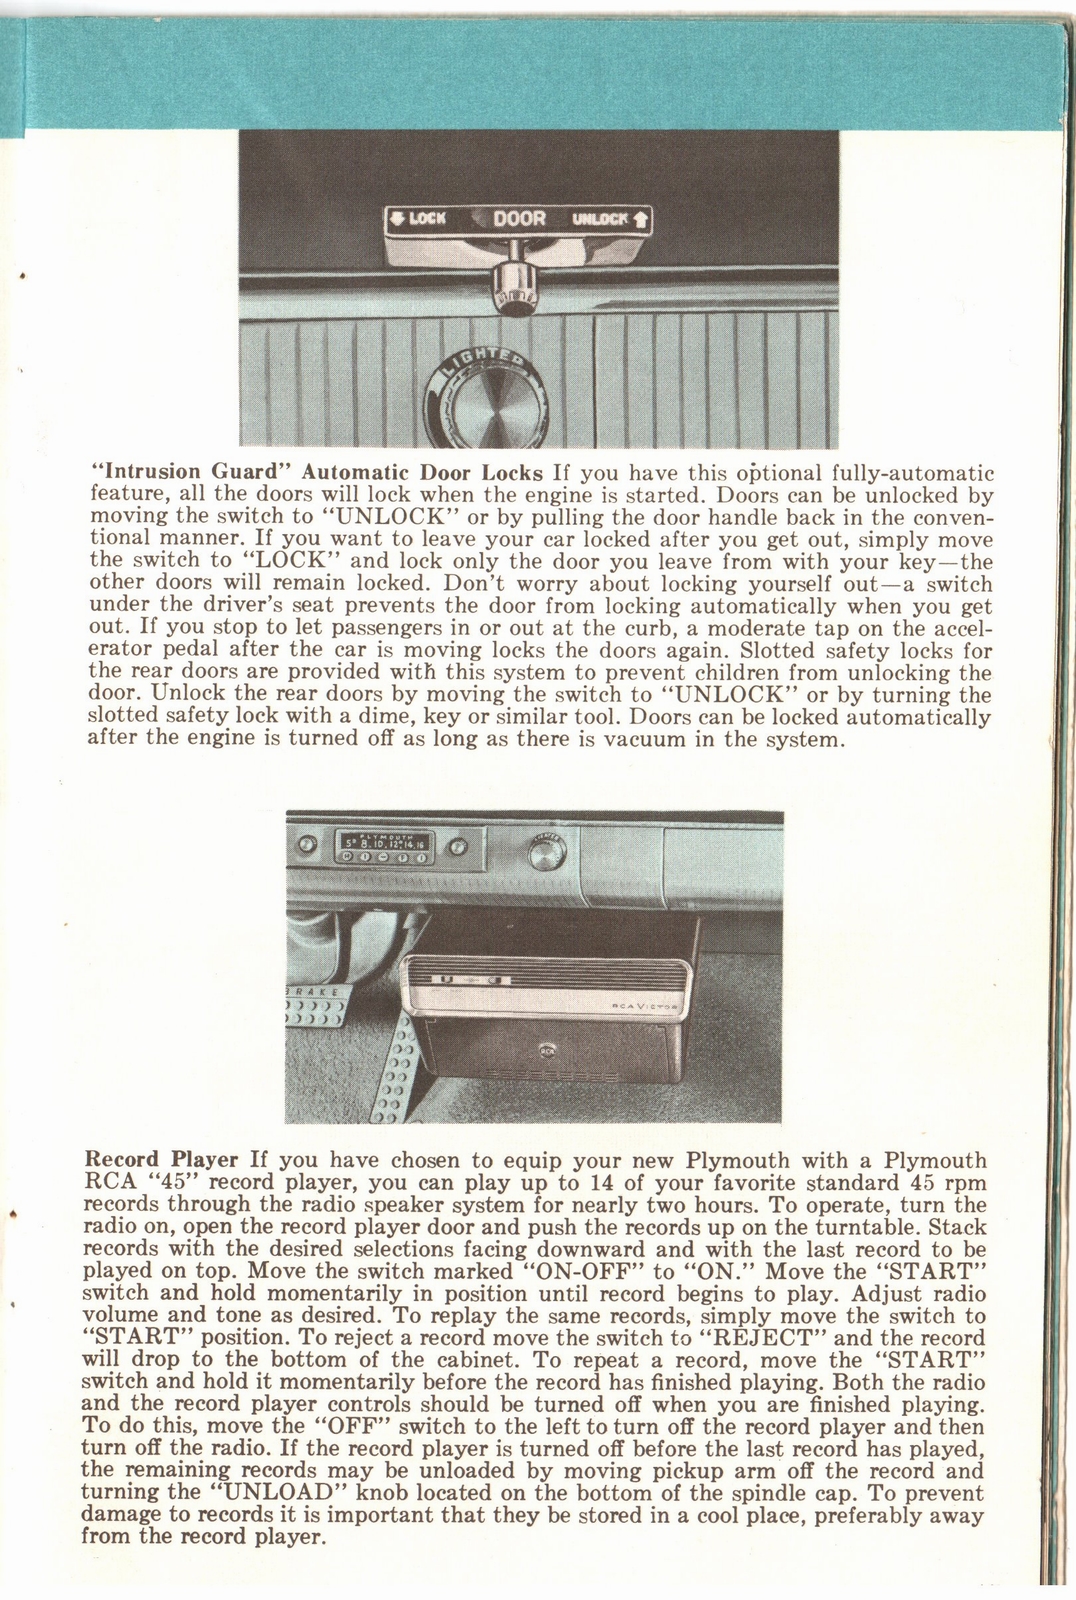 n_1960 Plymouth Owners Manual-15.jpg